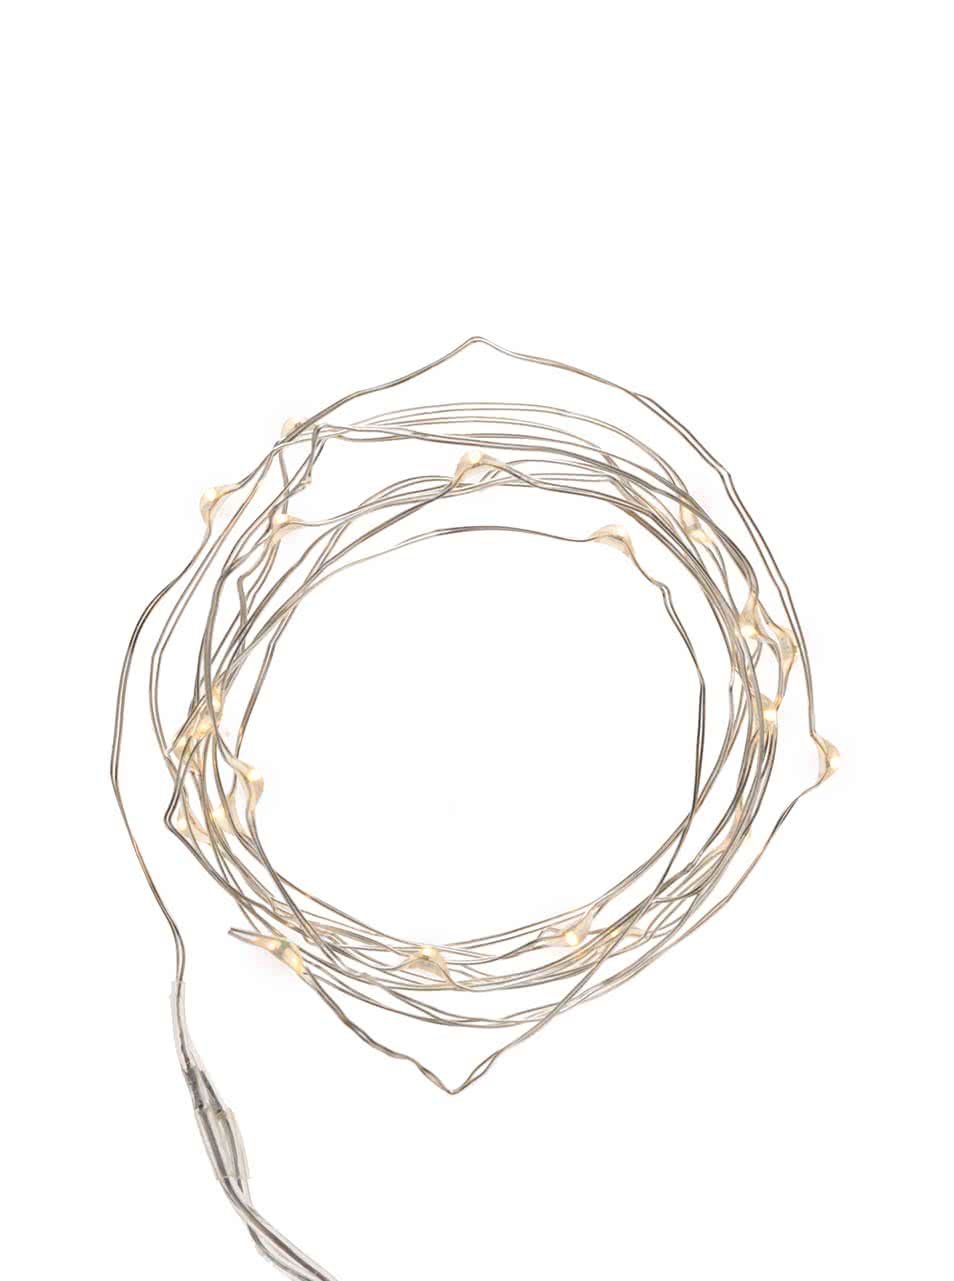 Svíticí řetěz ve stříbrné barvě Kikkerland Wire